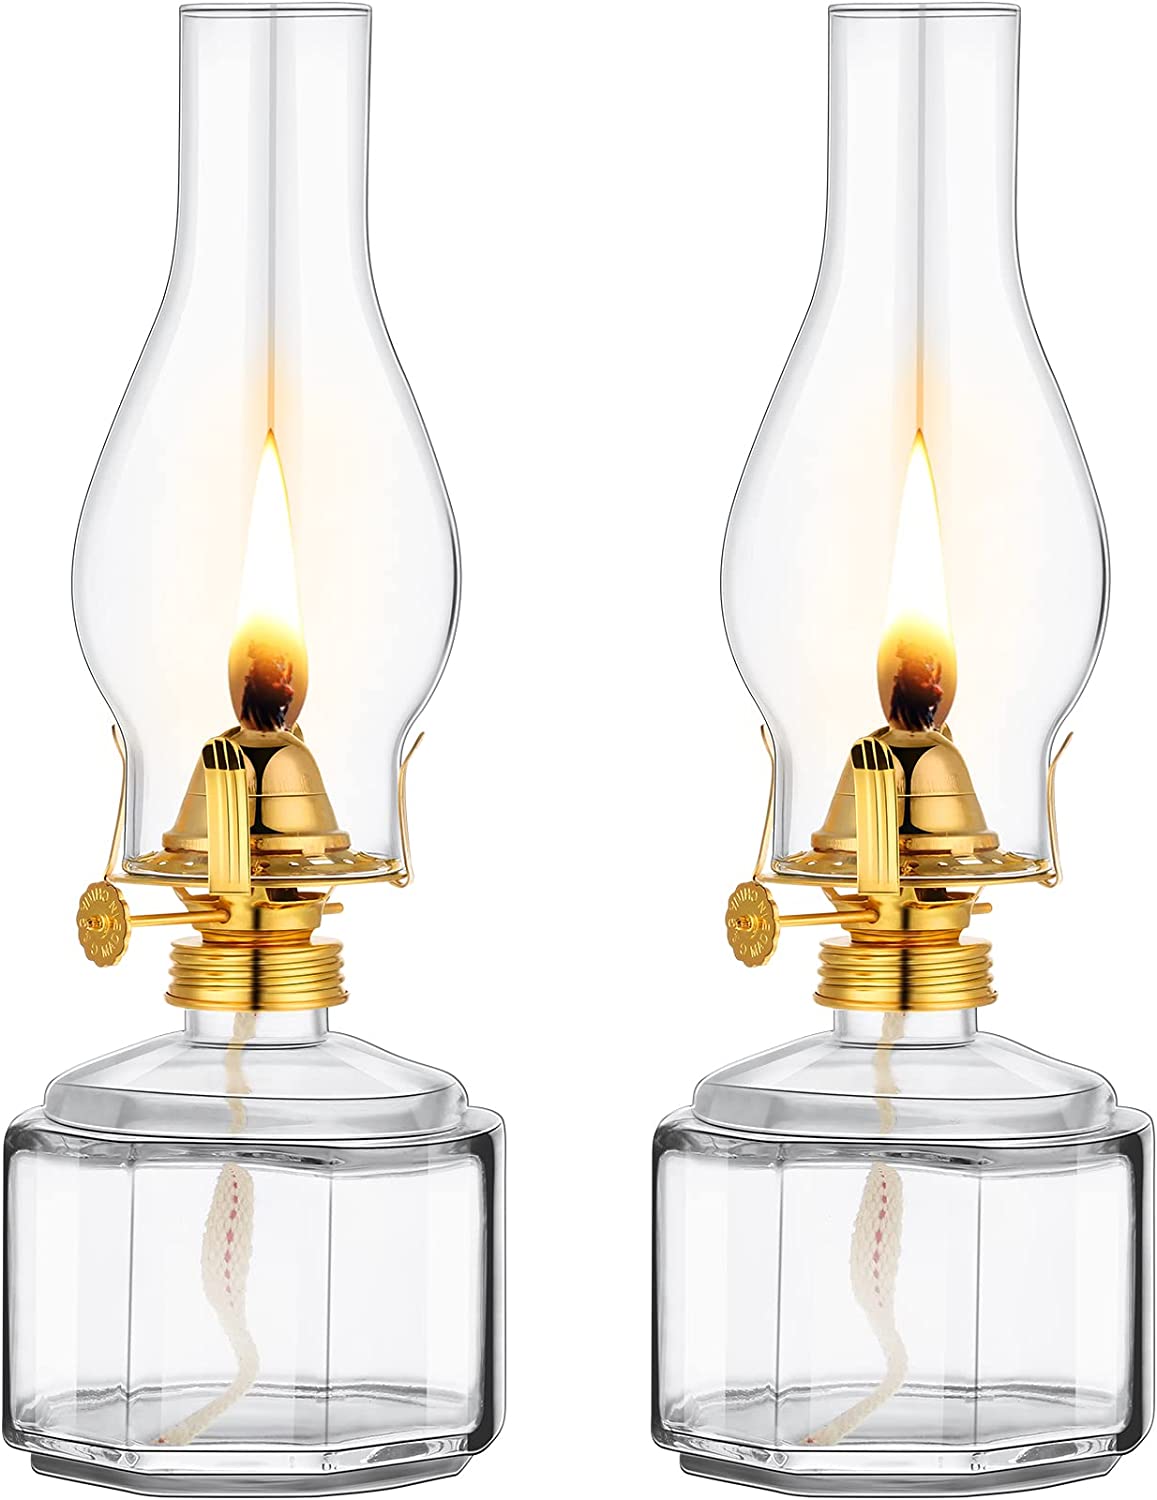 Vintage Oil Lamps For Indoor Use(set Of 2),8 Inch Height Kerosene Lamp With  Hurricane Glass,rustic Kerosene Lantern For Home Emergency Lighting,tablet